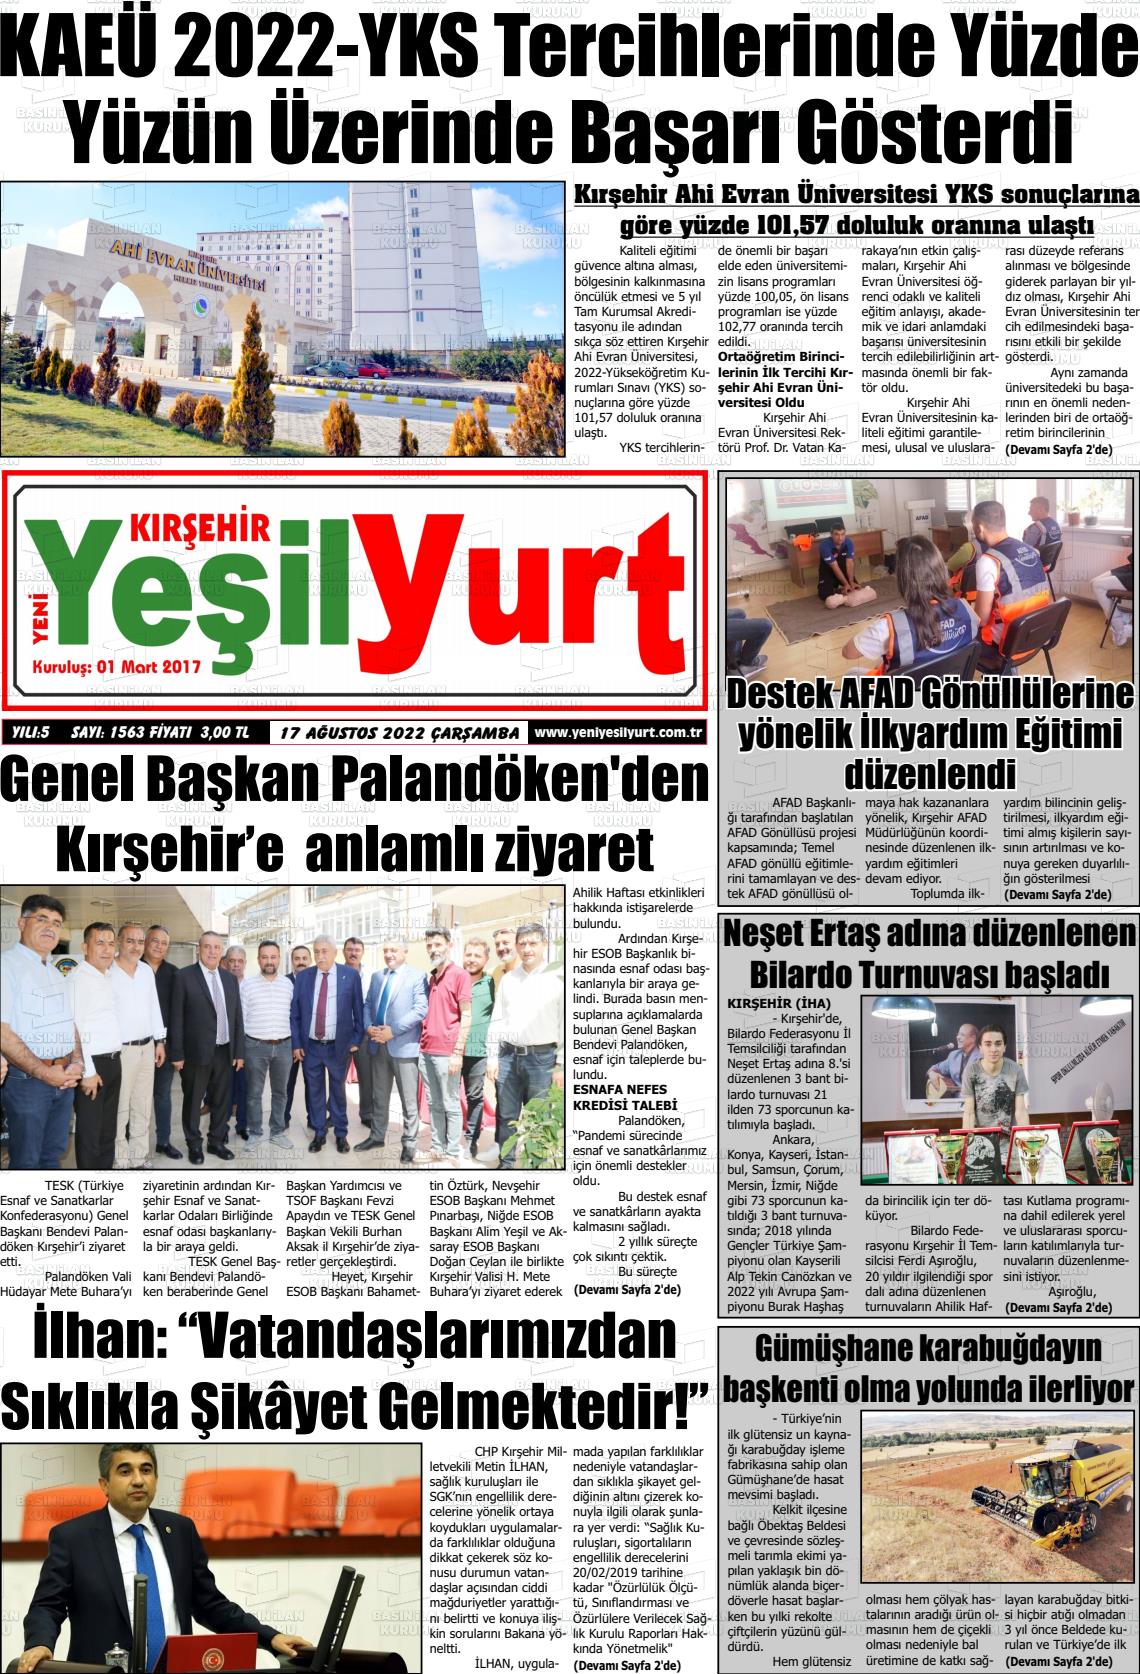 17 Ağustos 2022 Yeni Yeşilyurt Gazete Manşeti